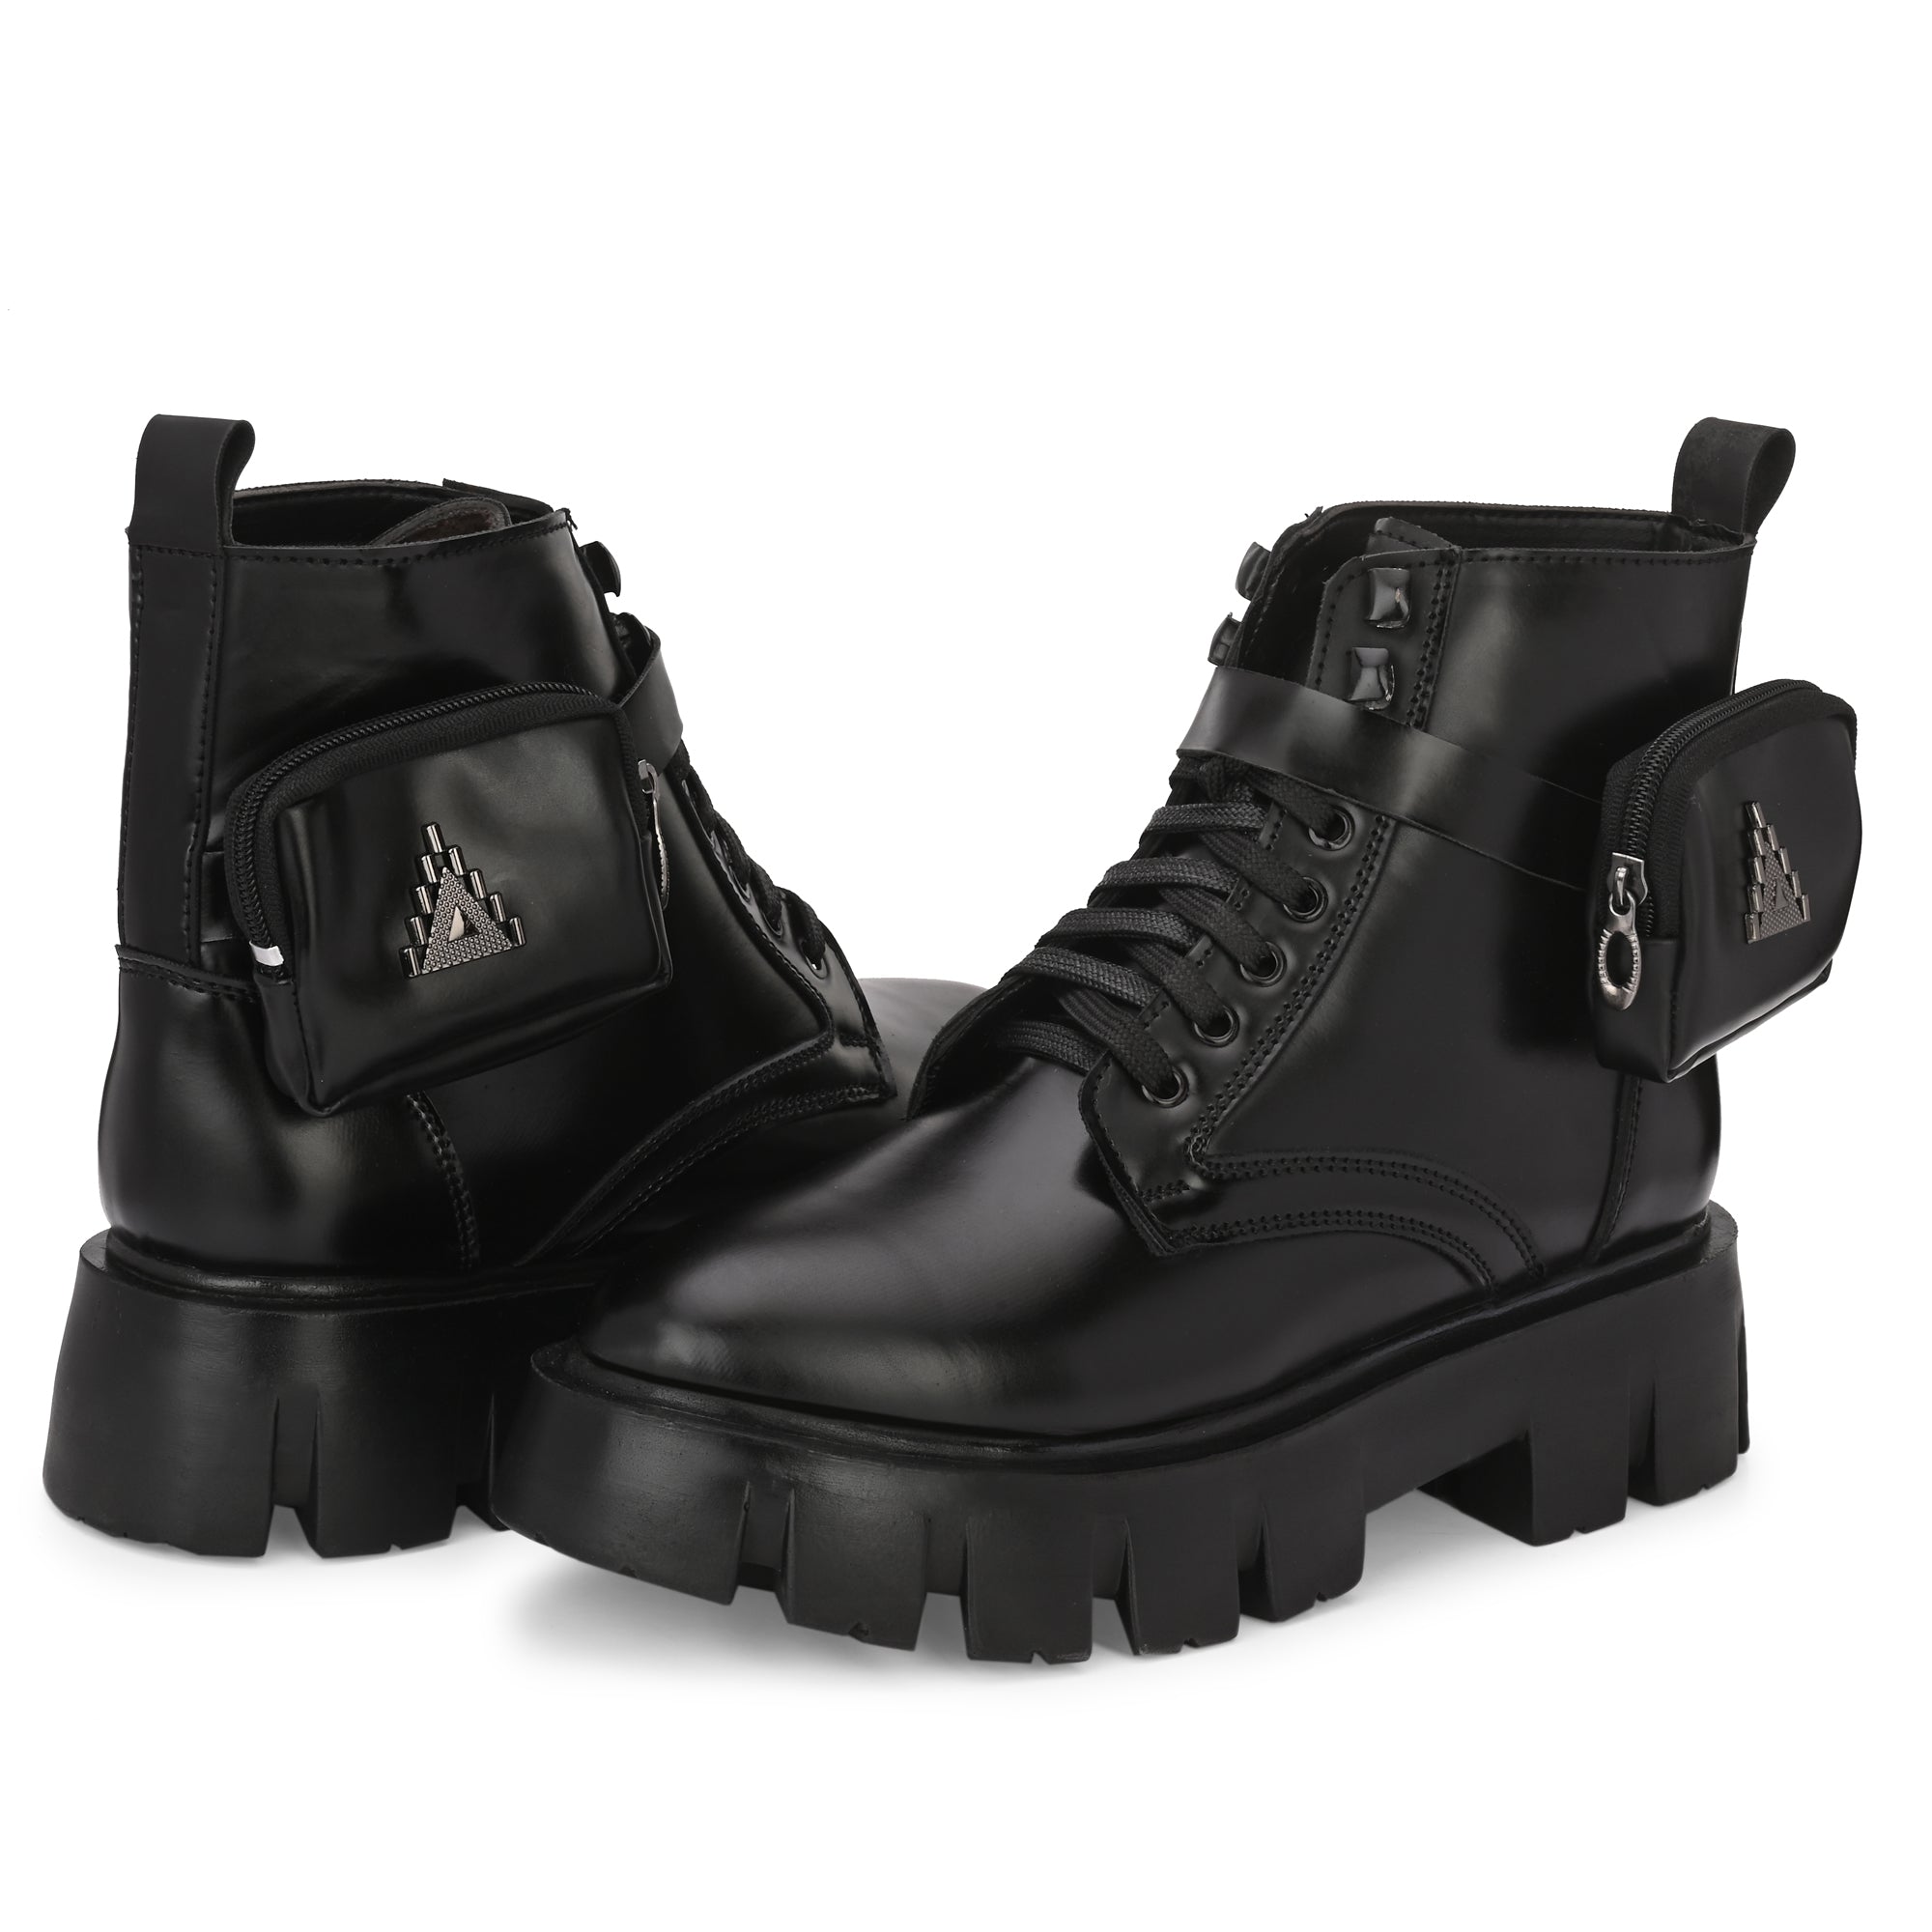 attitudist-matte-black-stylish-side-pocket-ankle-boots-for-men